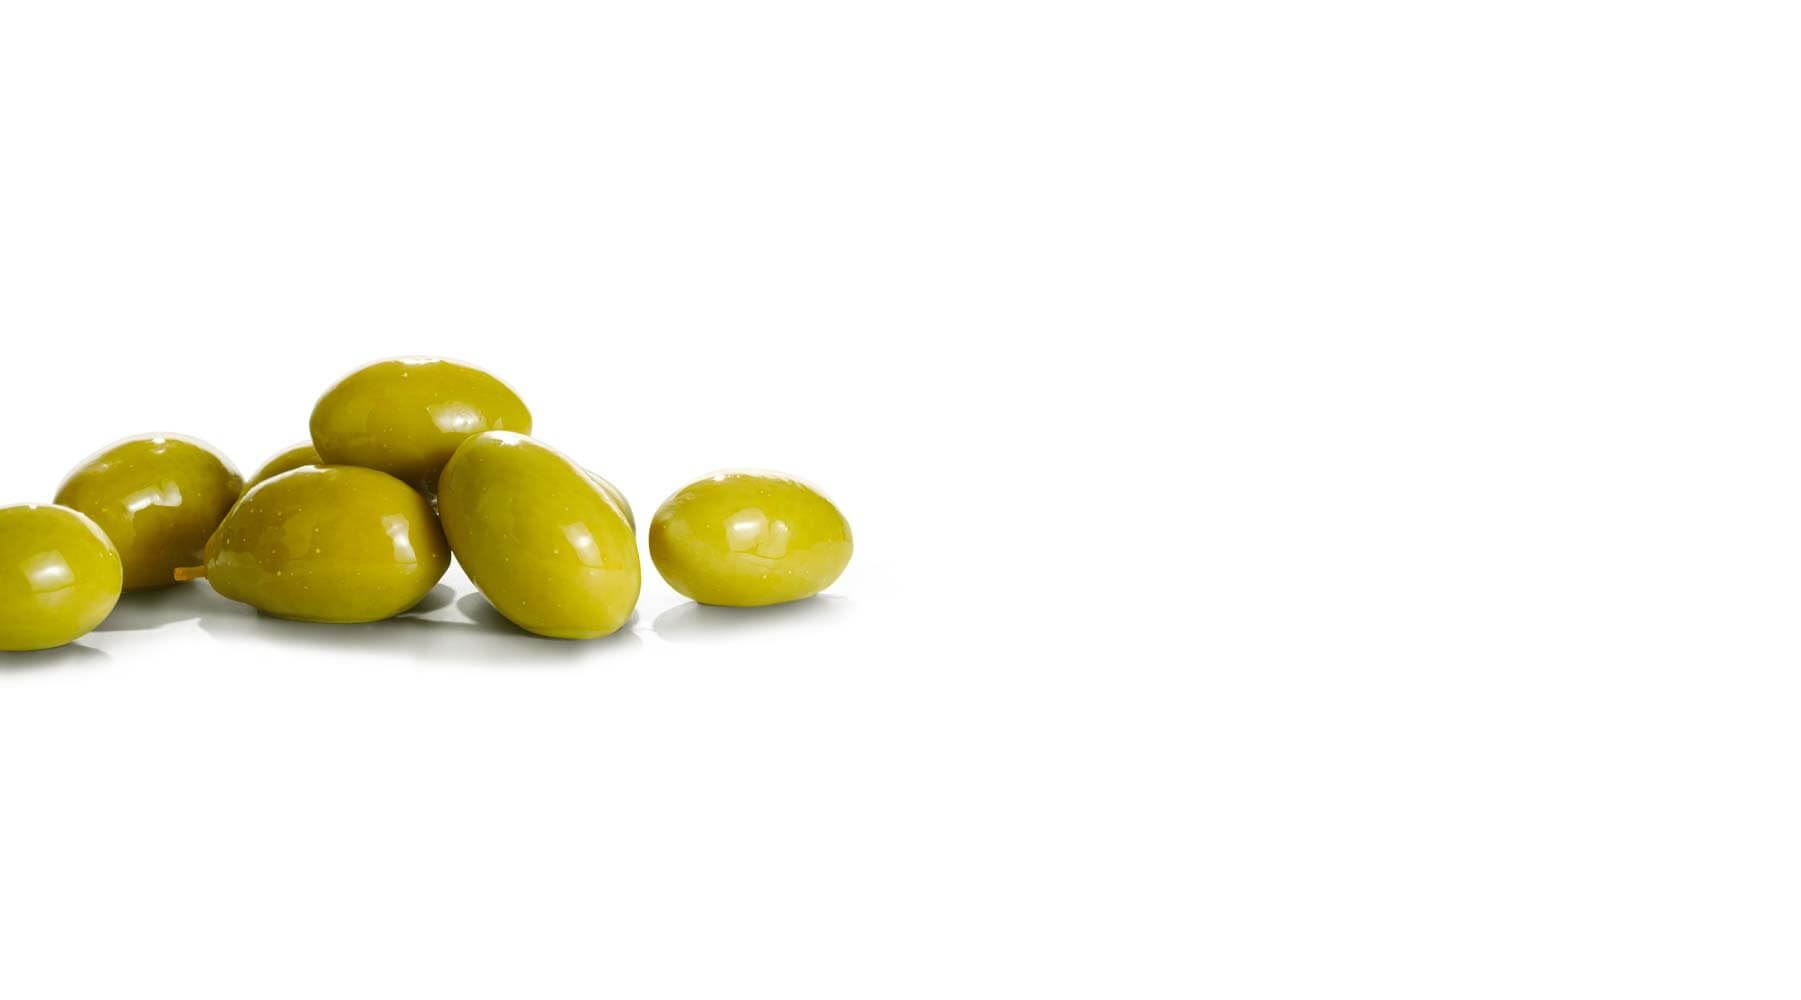 olivenoel